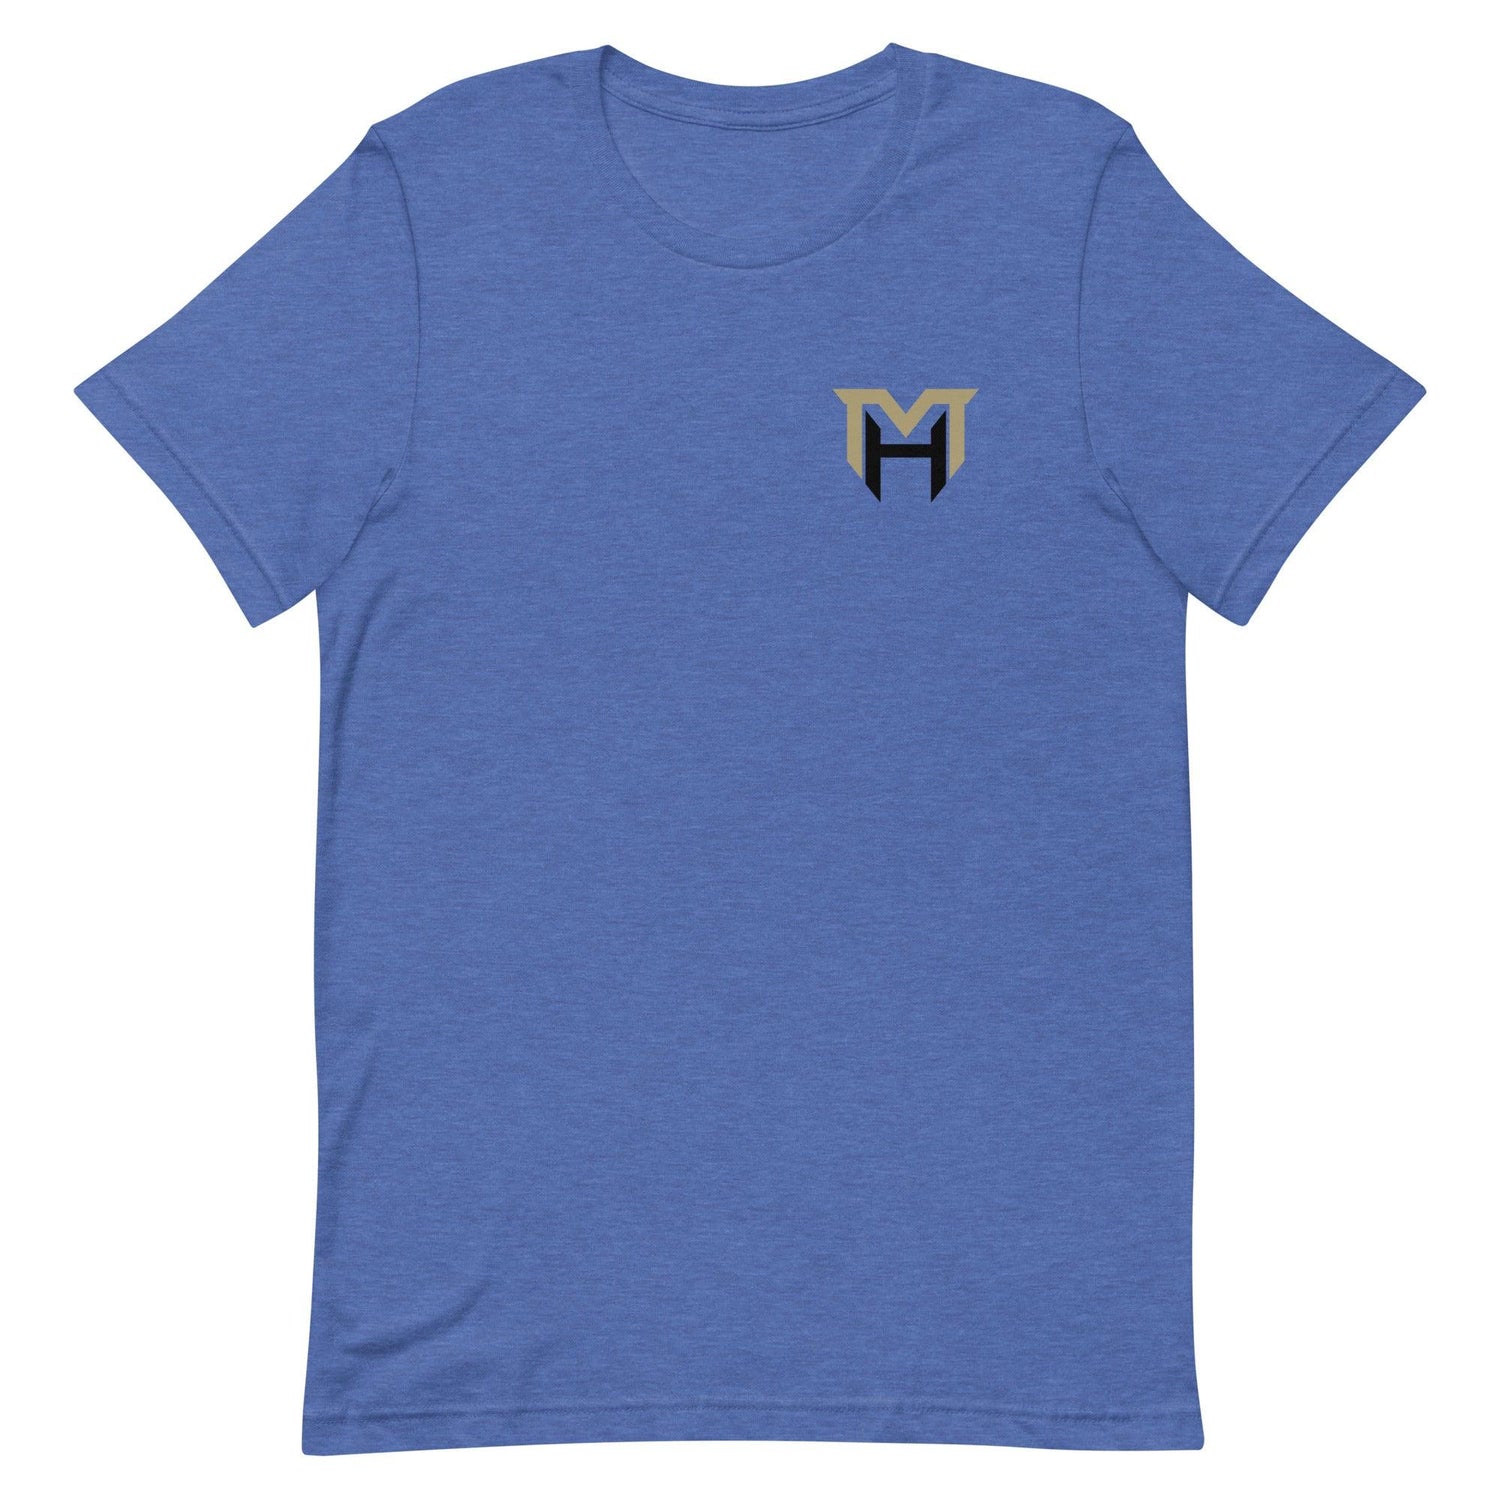 Martel Hight "Essential" t-shirt - Fan Arch